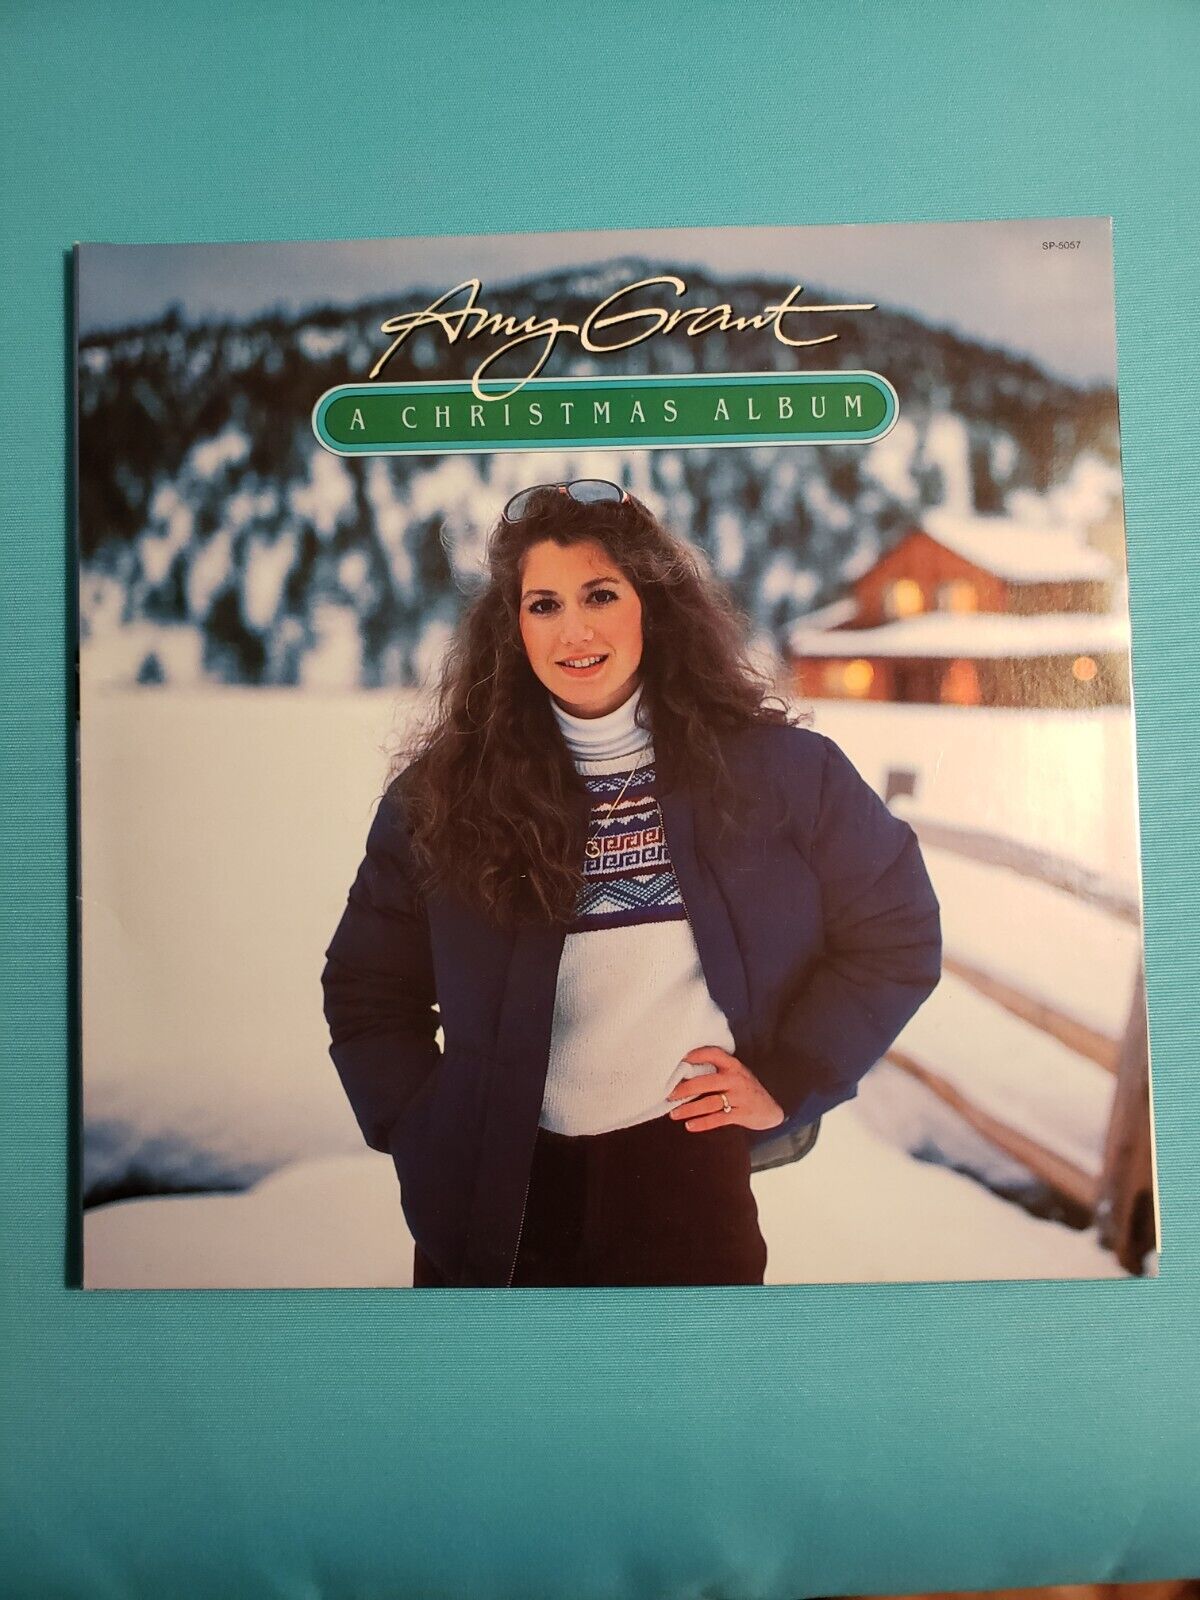 Vintage Amy Grant A Christmas Album Vinyl LP Record! US 1983 A&M SP 5057 NM-MT 